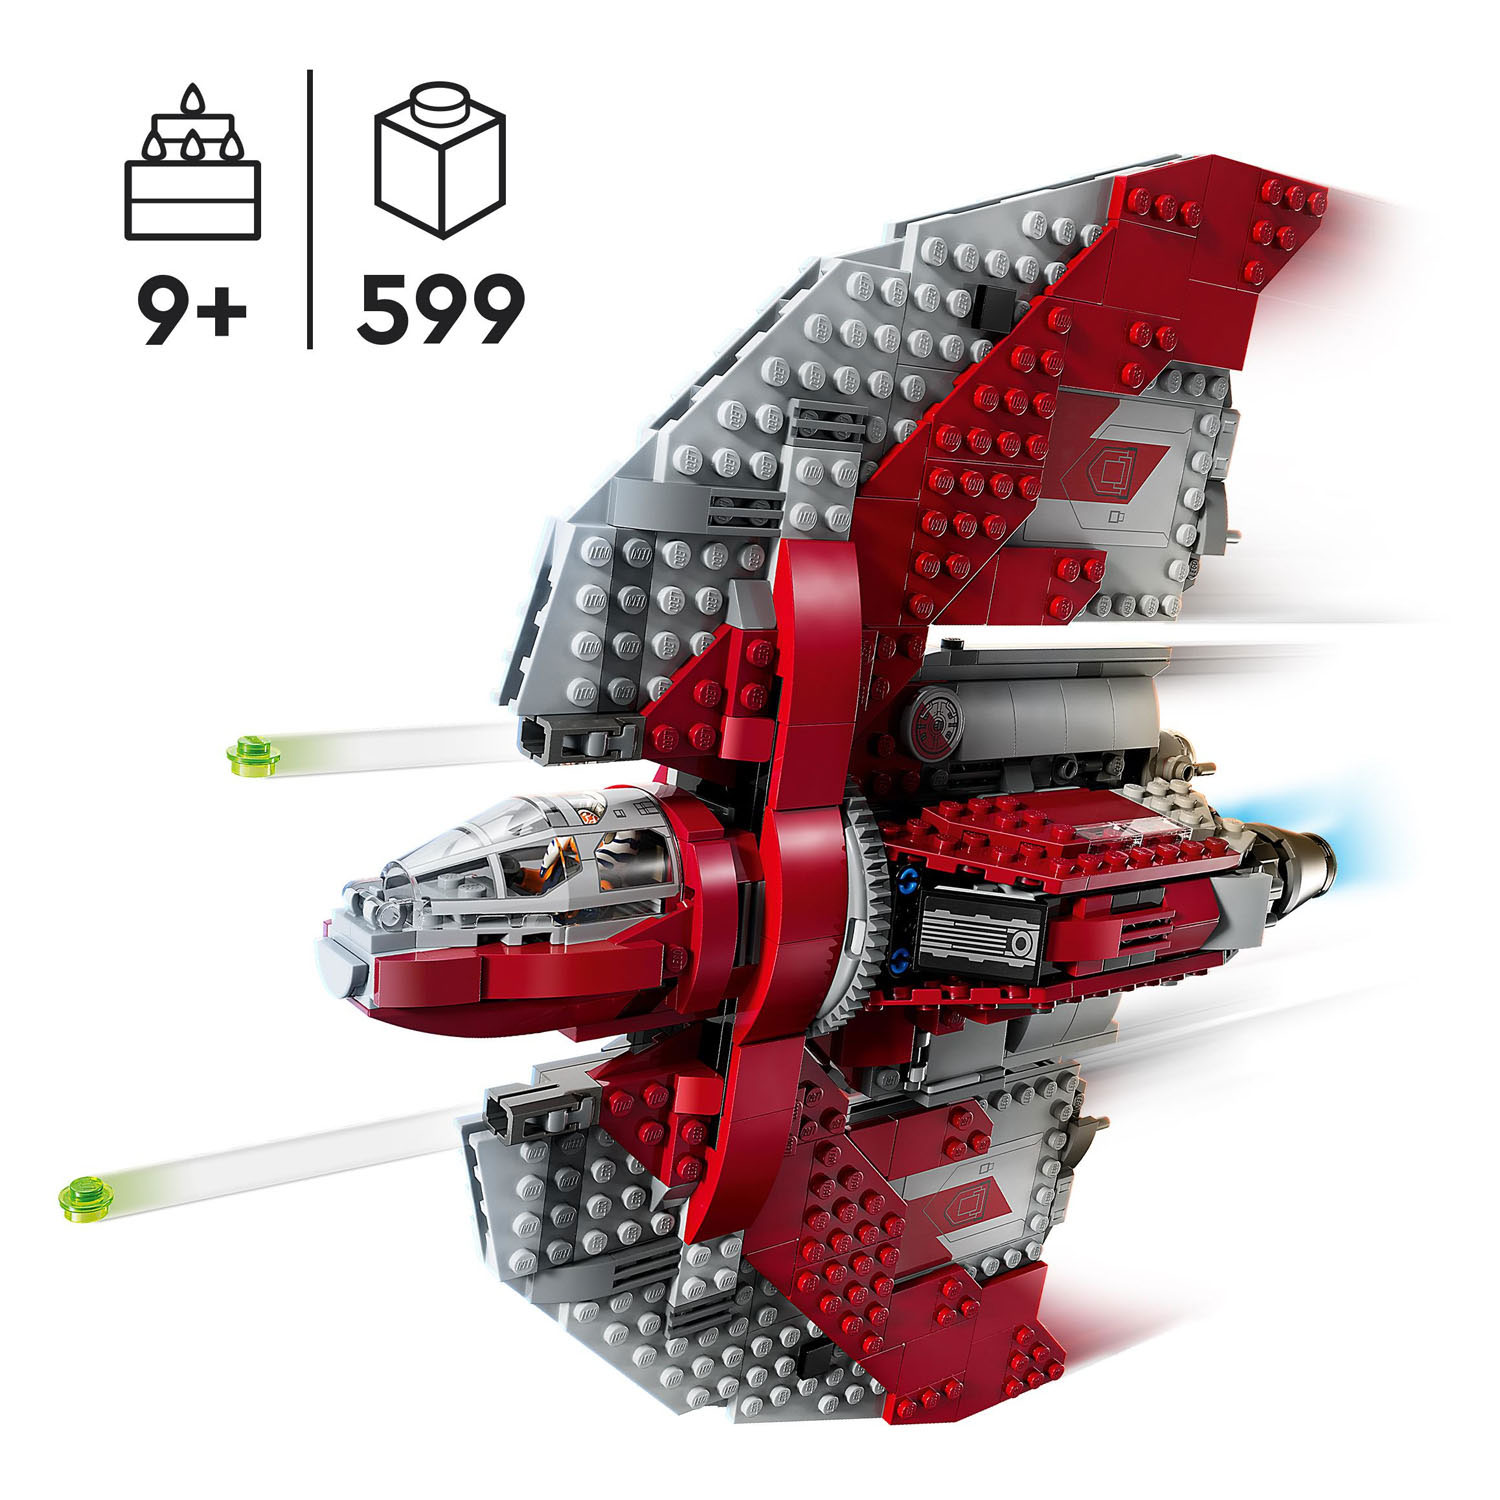 Lego Star Wars 75362 Ahsoka Tano's T-6 Jedi Shuttle